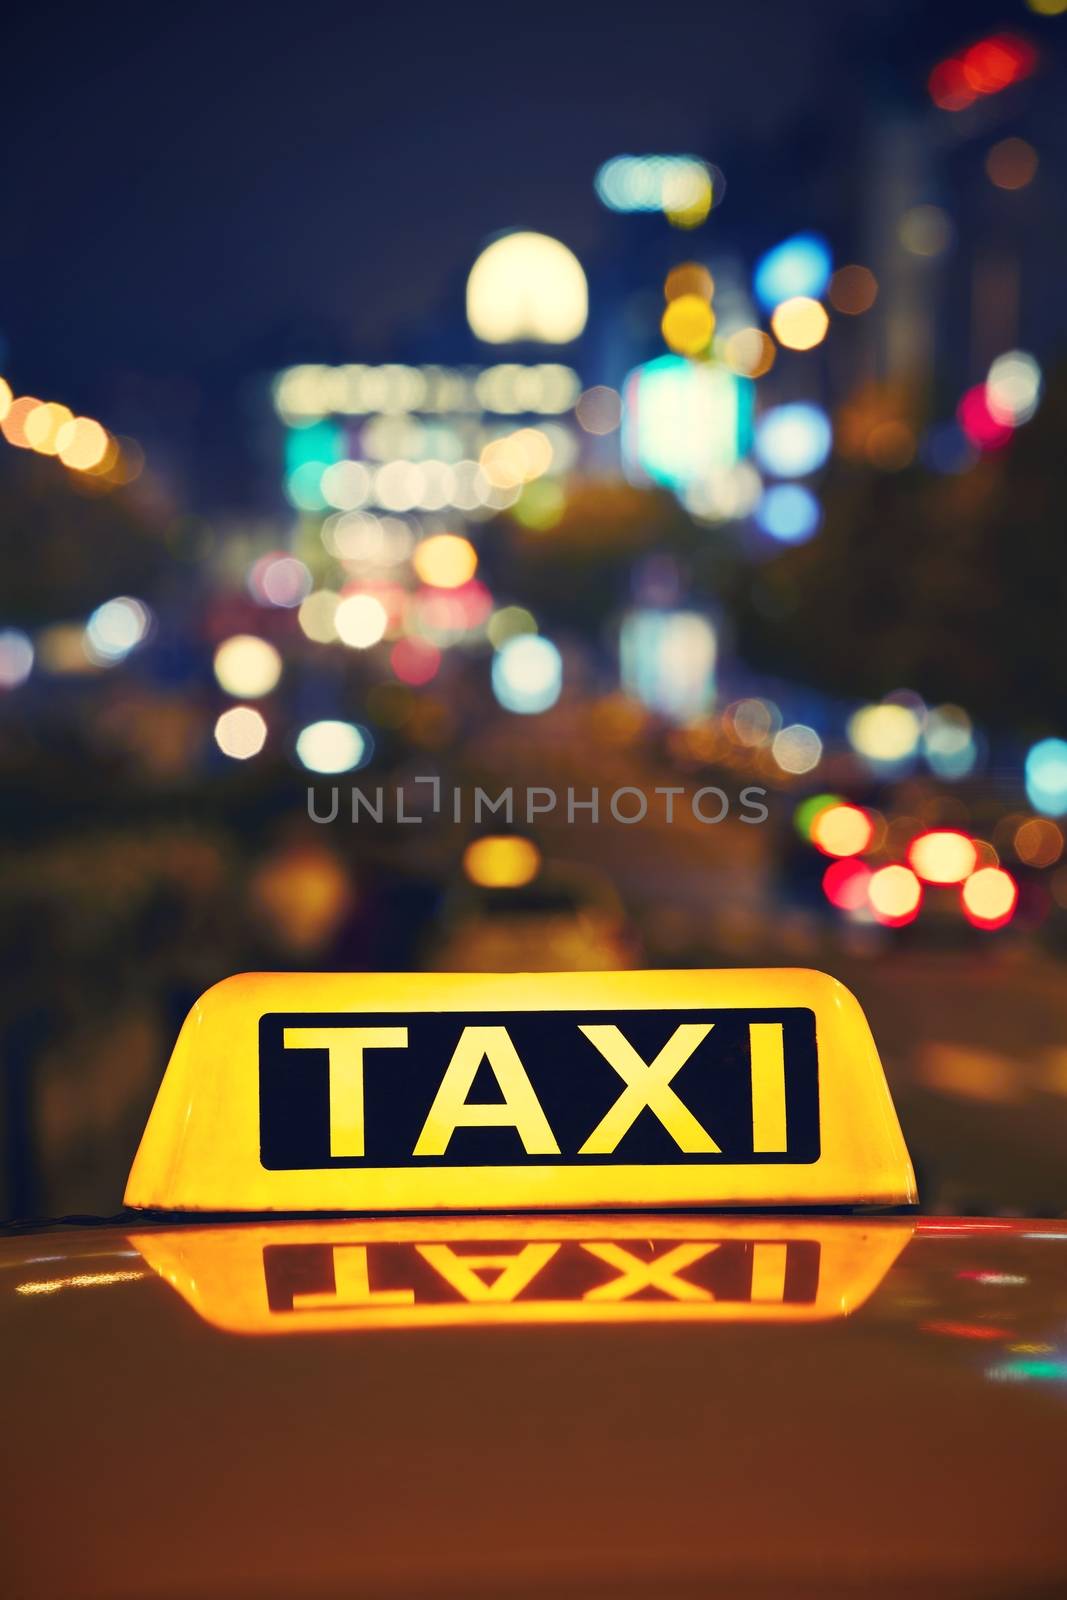 Taxi at night by Chalabala